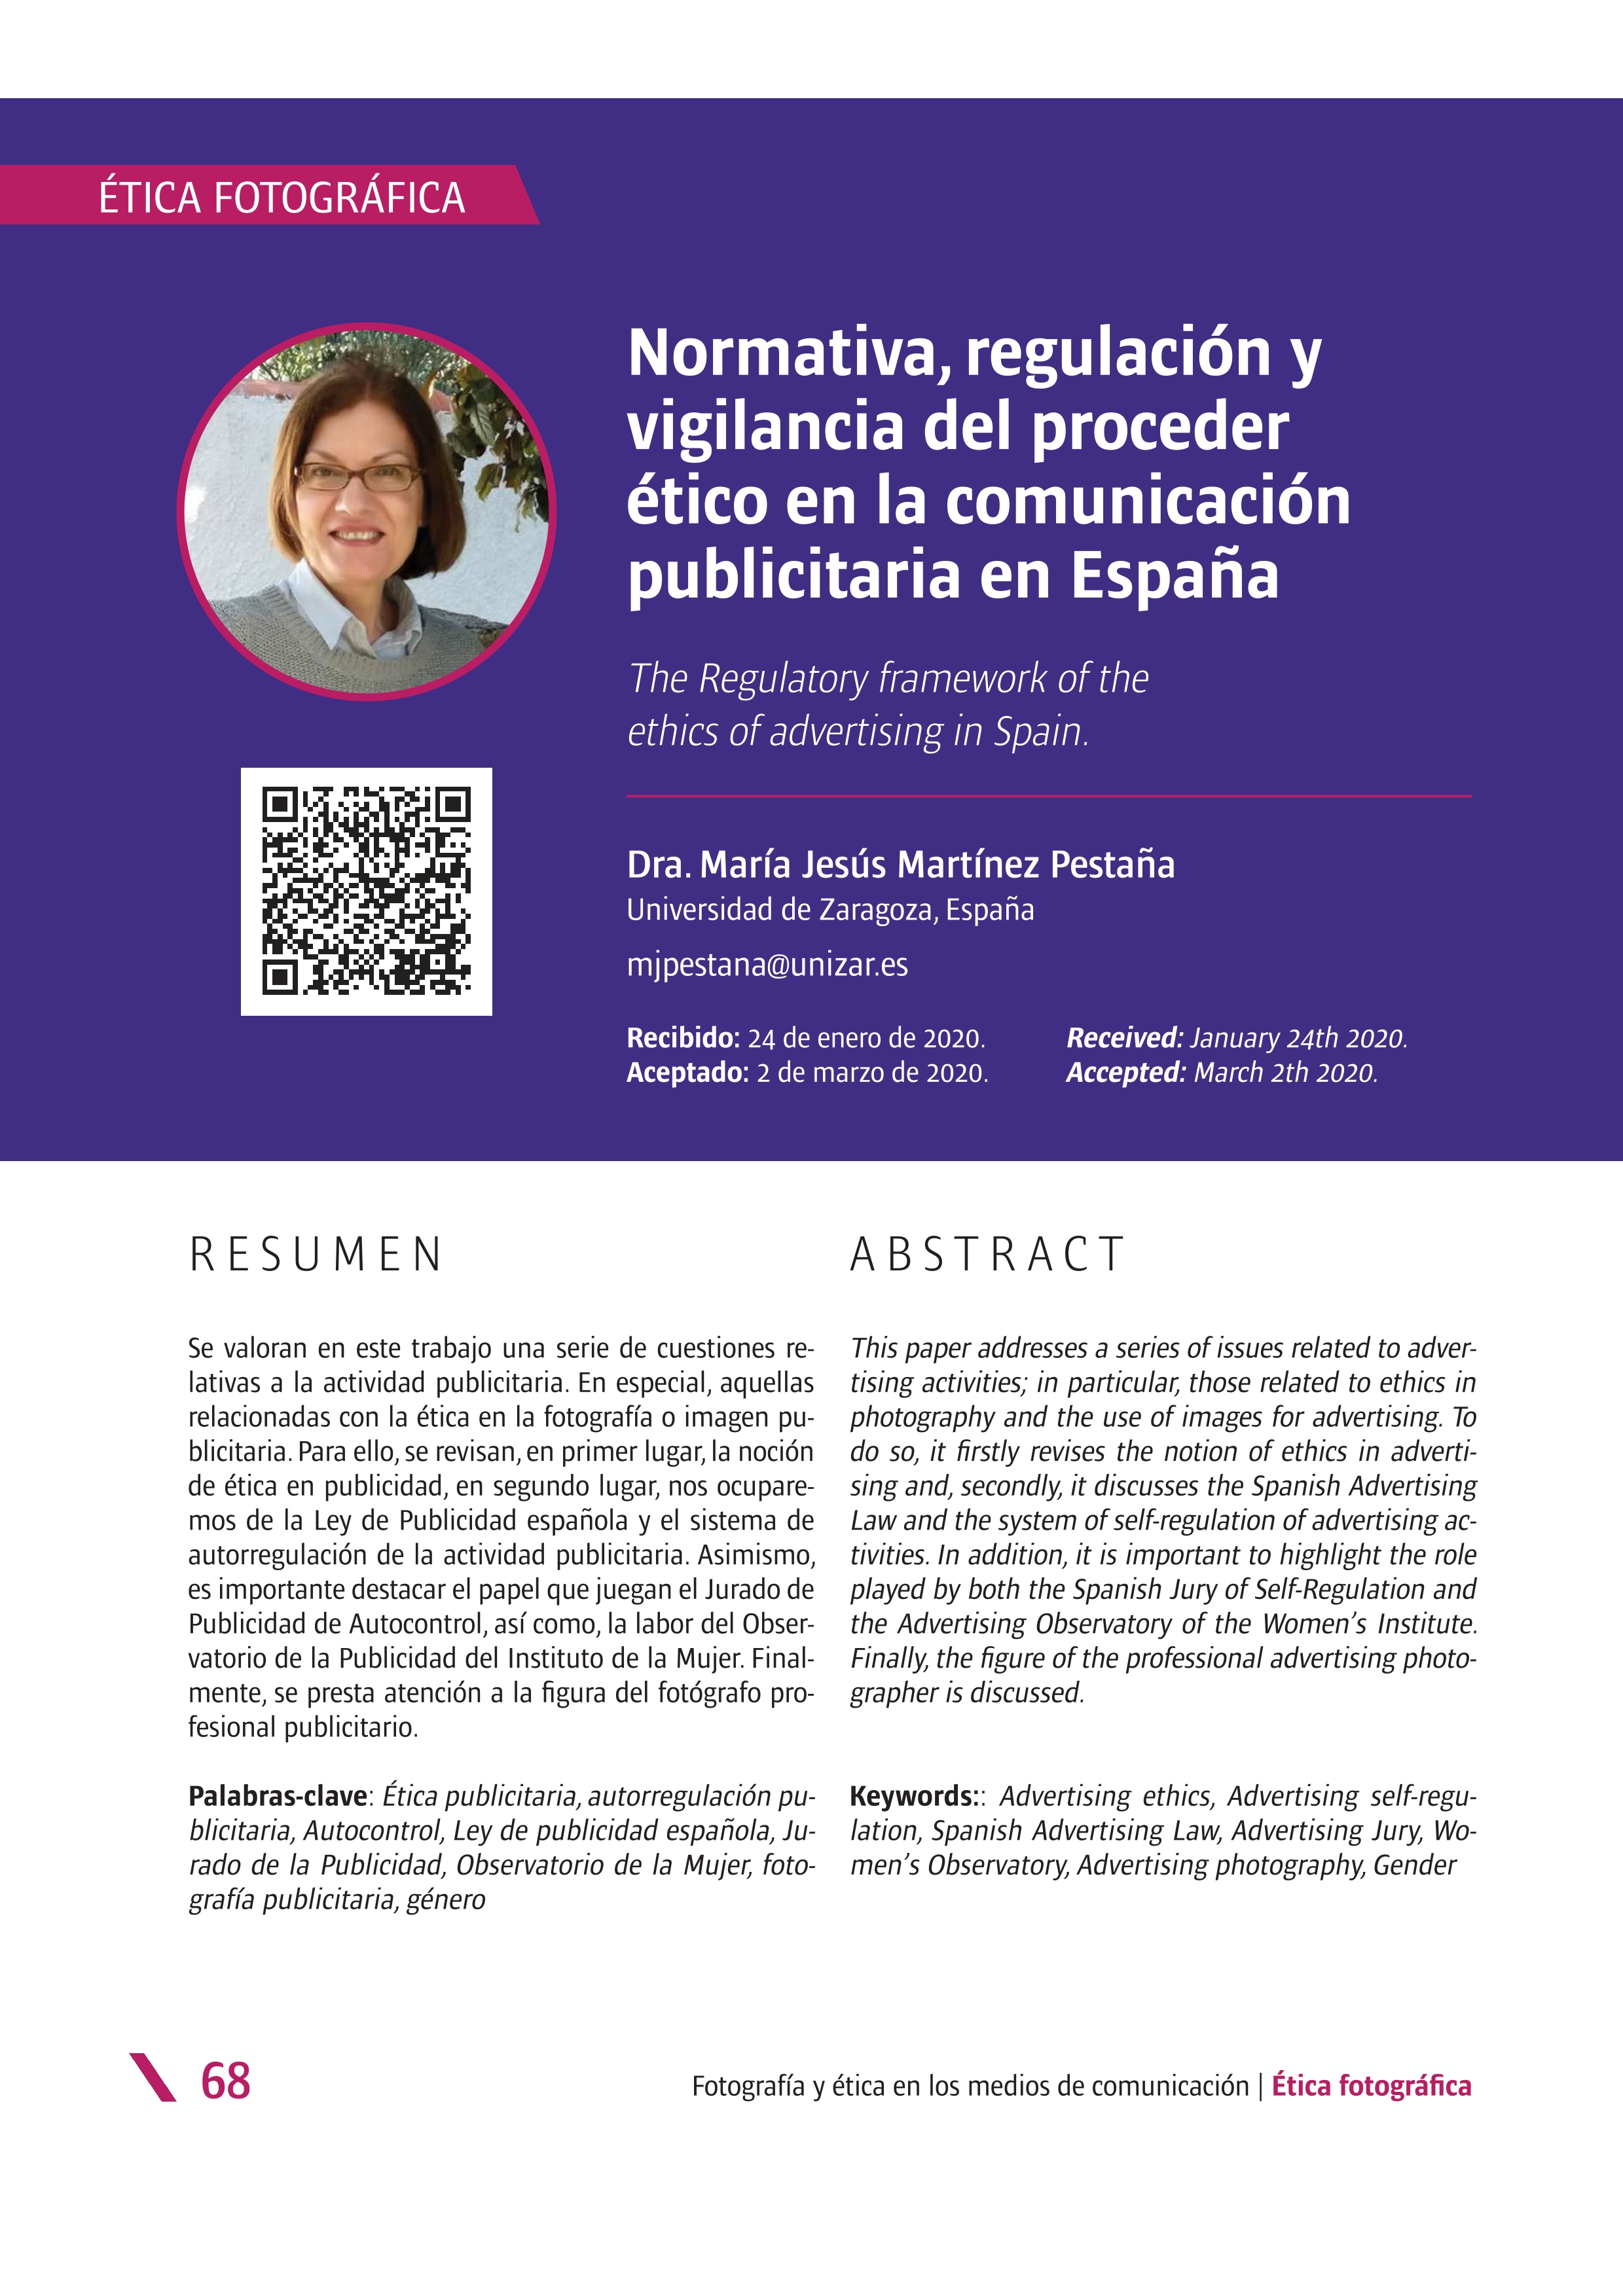 Normativa, regulación y vigilancia del proceder ético en la comunicación publicitaria en España